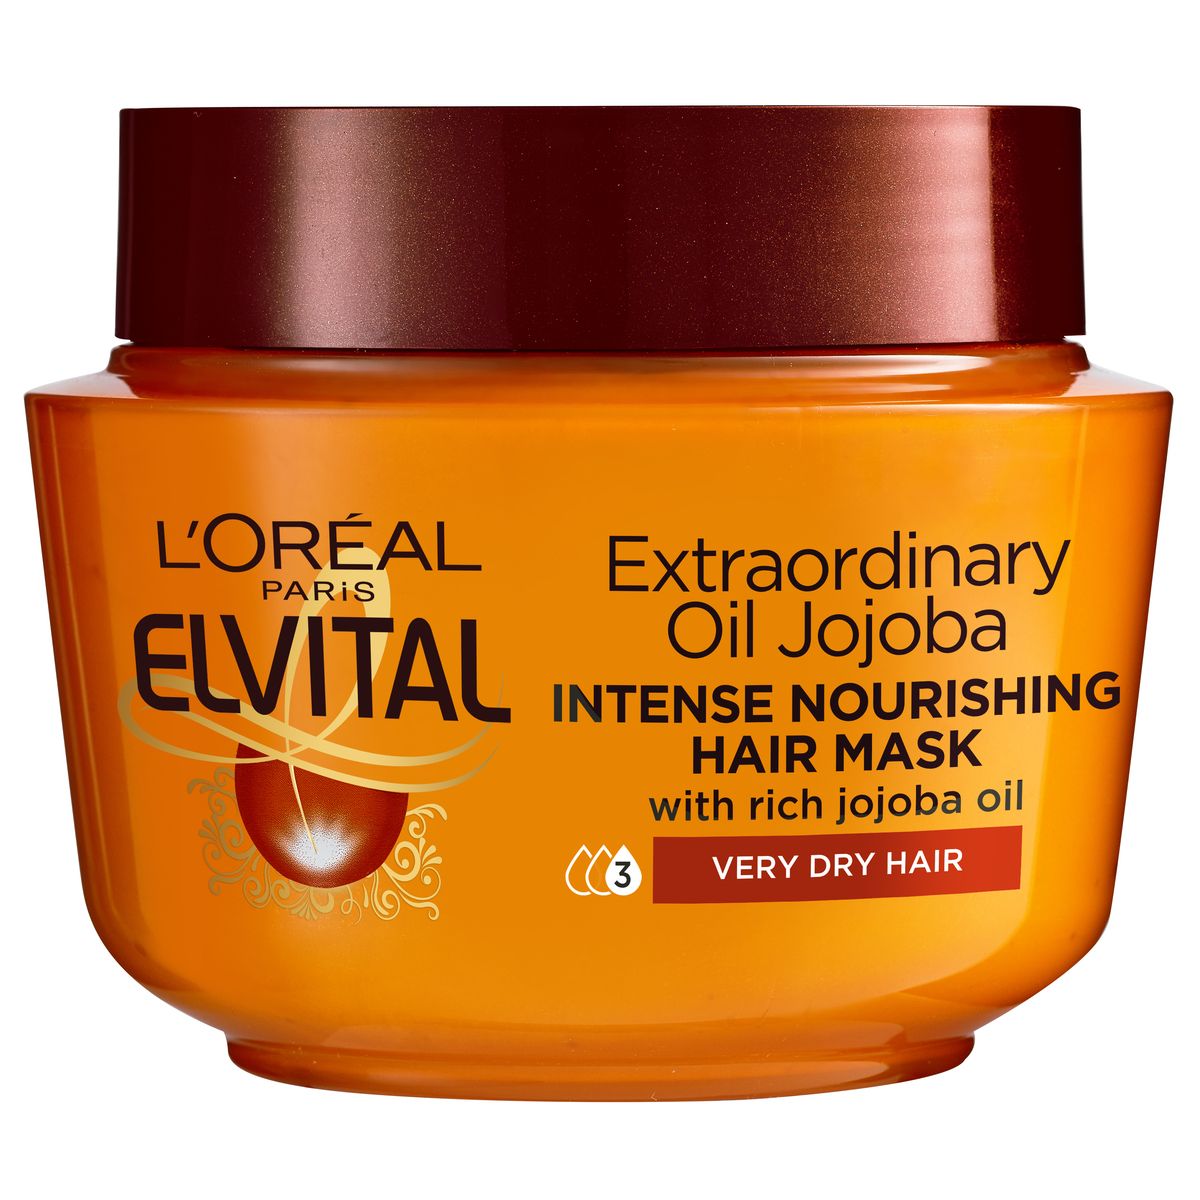 kæmpe stor jernbane Afgift Køb L'Oréal Elvital Extraordinary Oil Mask 300 ml hos Med24.dk